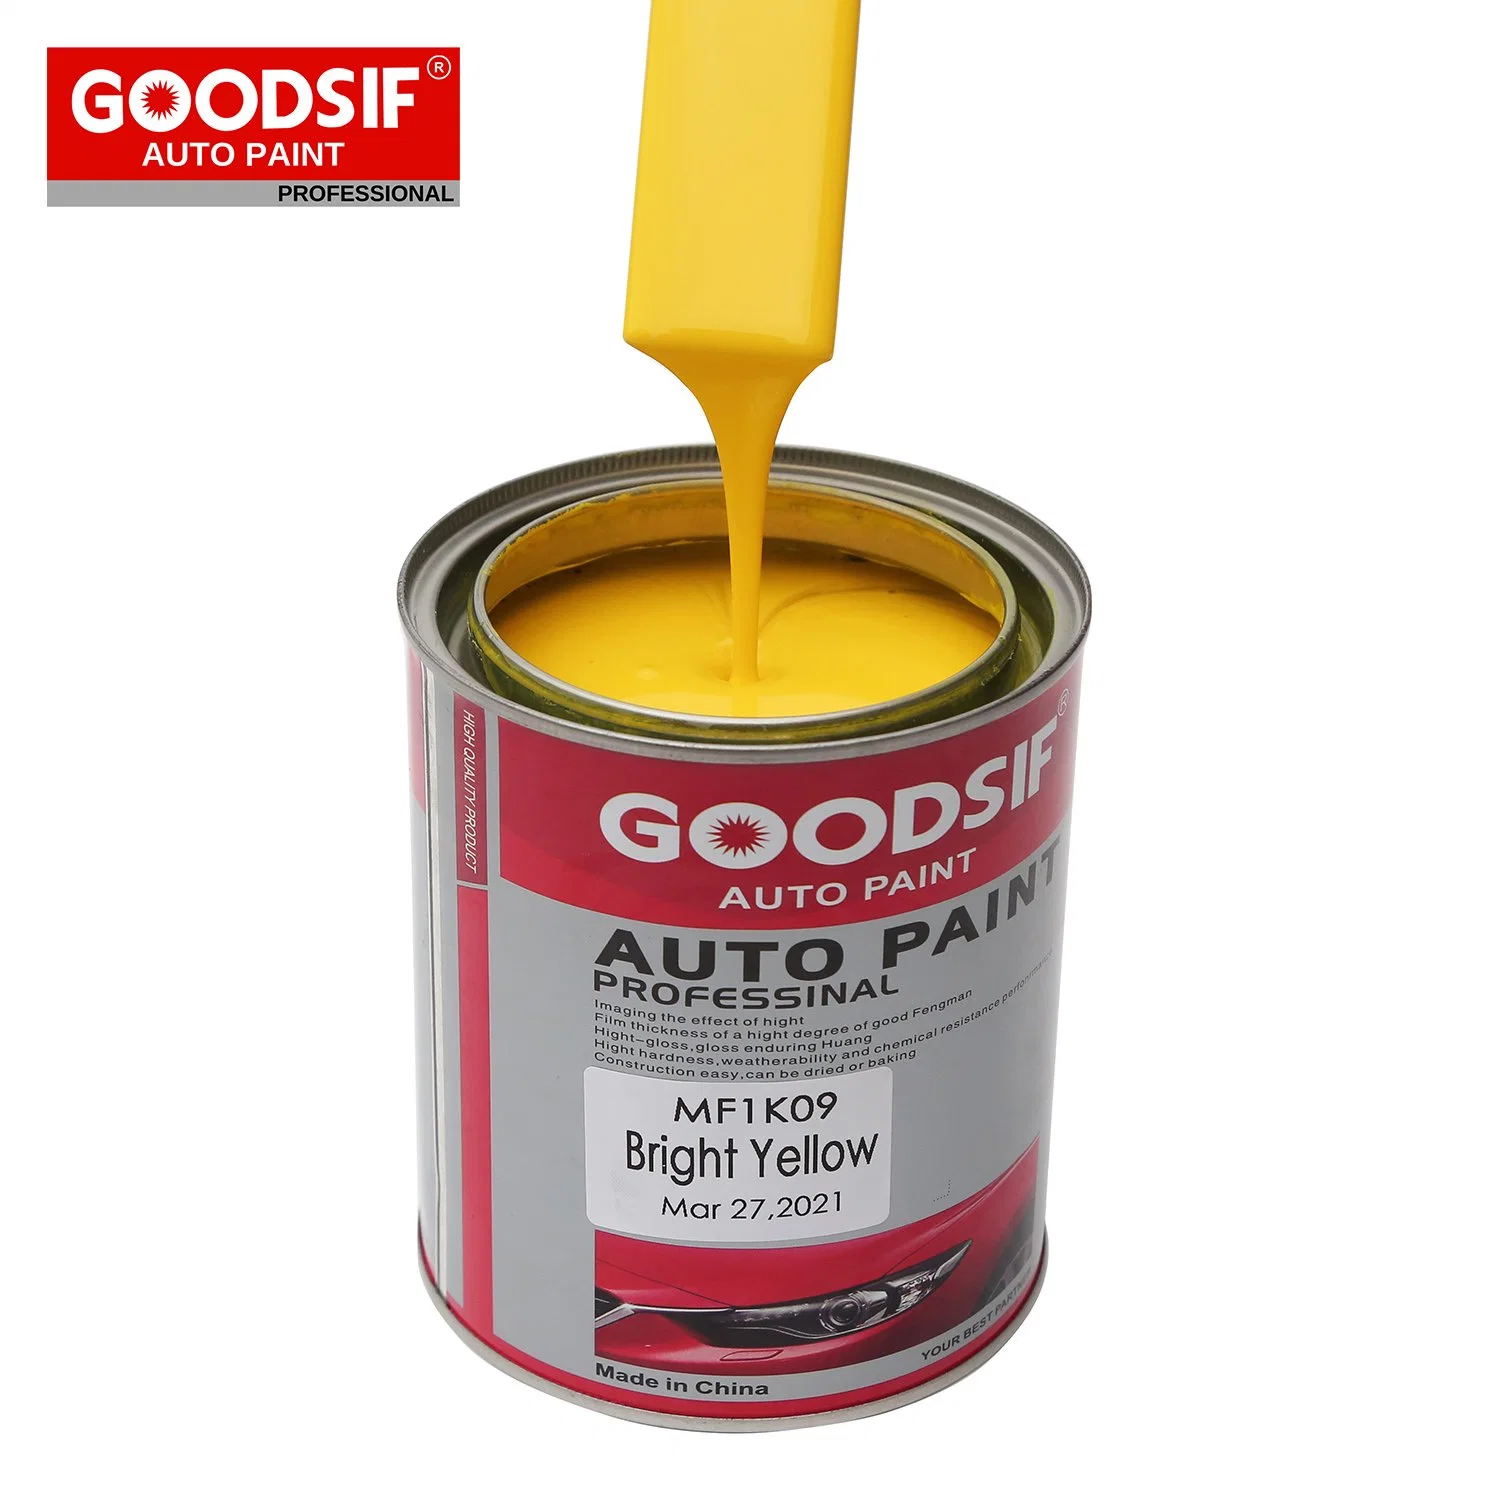 Auto Body Shop alto poder de aderência Goodsif acrílico de spray de tinta para repintura automóvel pintura automotiva